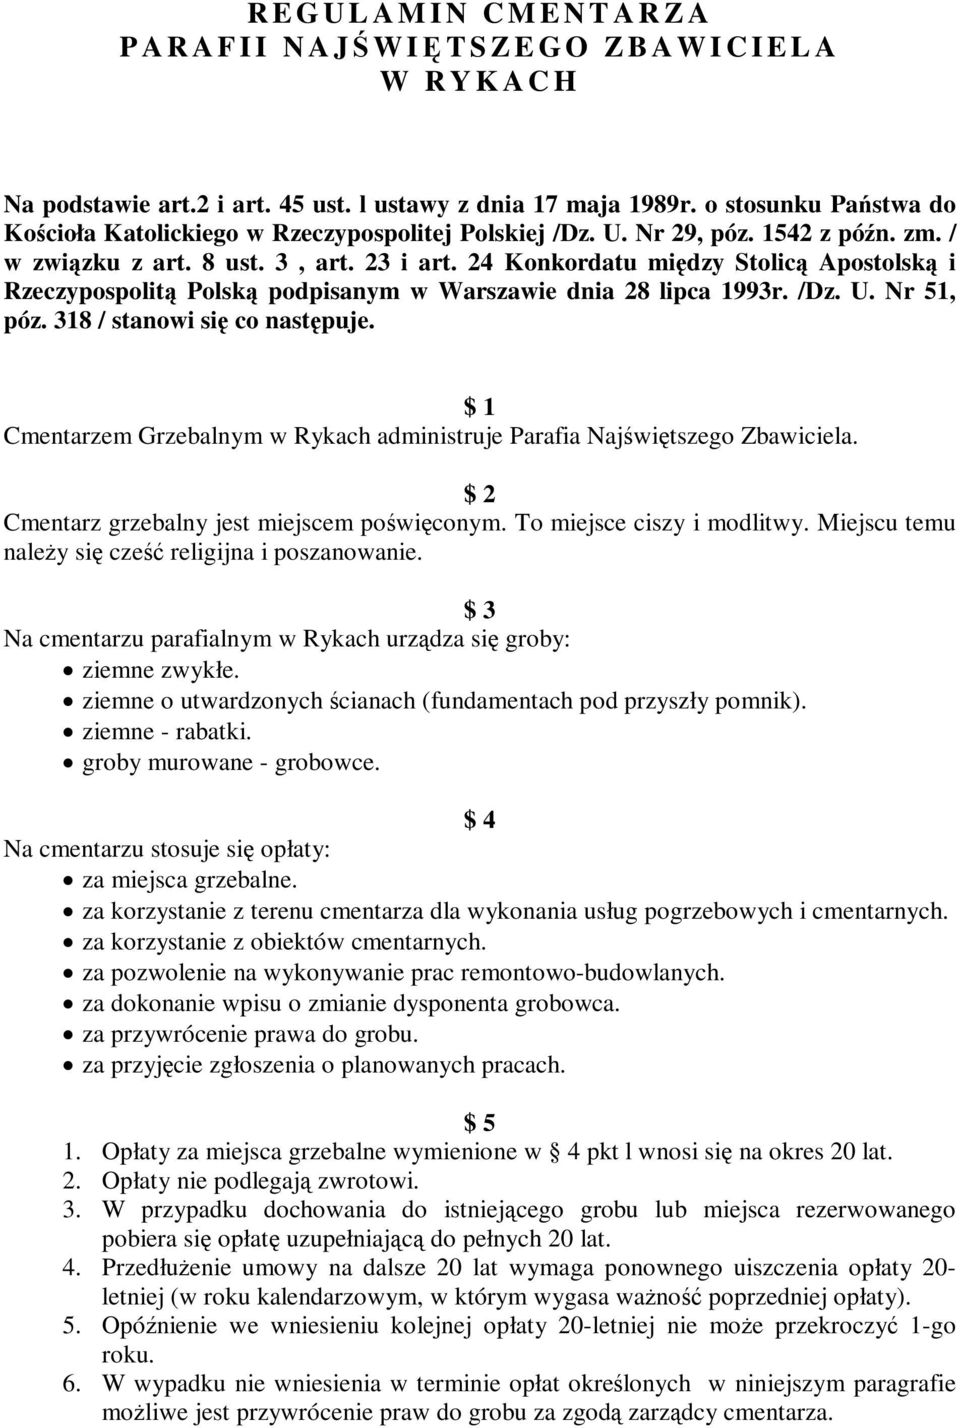 24 Konkordatu między Stolicą Apostolską i Rzeczypospolitą Polską podpisanym w Warszawie dnia 28 lipca 1993r. /Dz. U. Nr 51, póz. 318 / stanowi się co następuje.